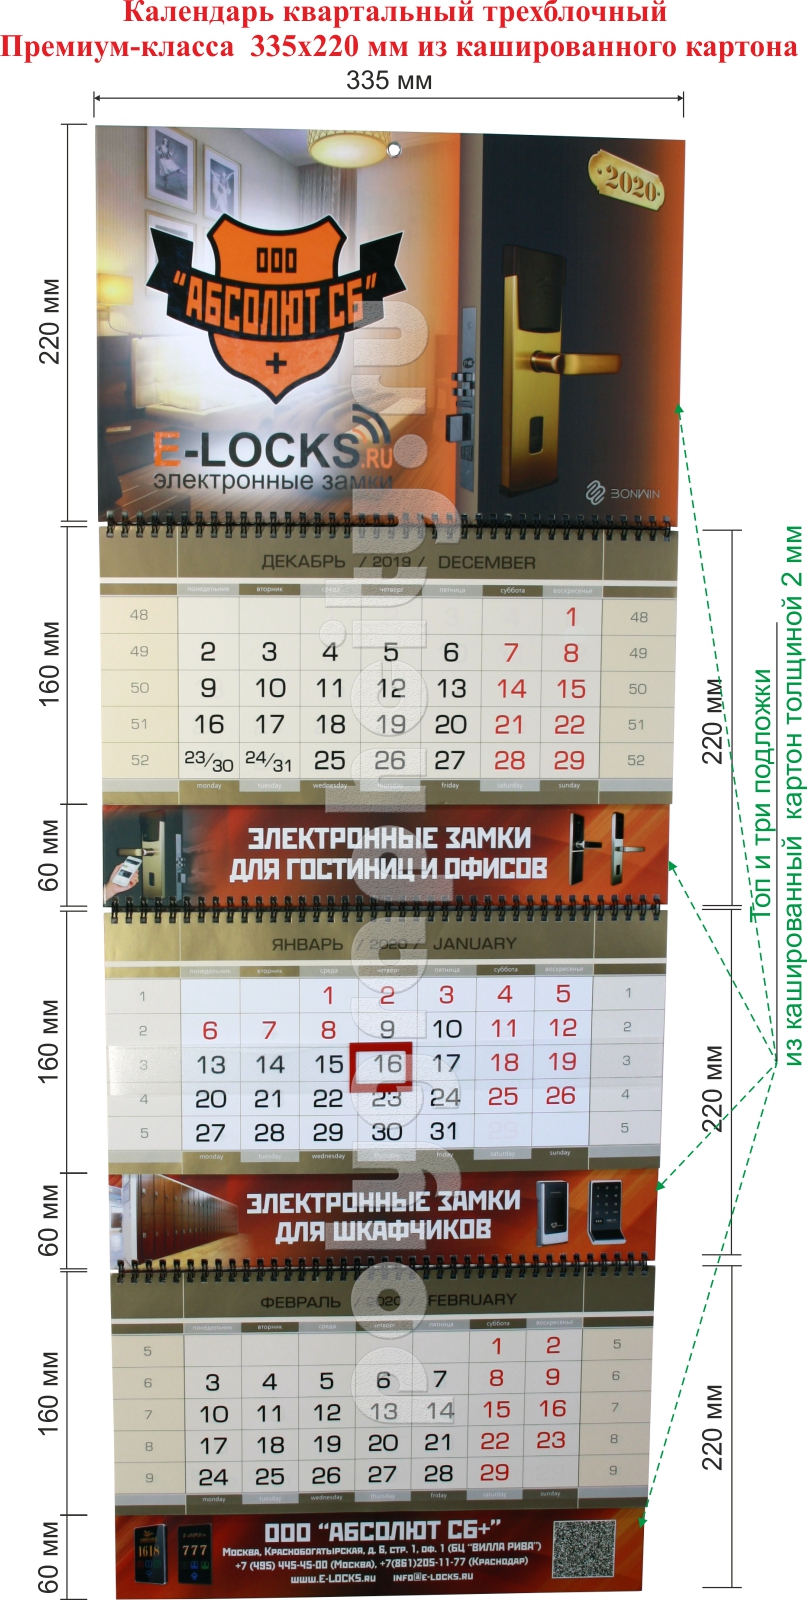 Квартальный календарь размером 335х220 из кашированного картона трехблочный на 2020 г. мм (Премиум-класс)